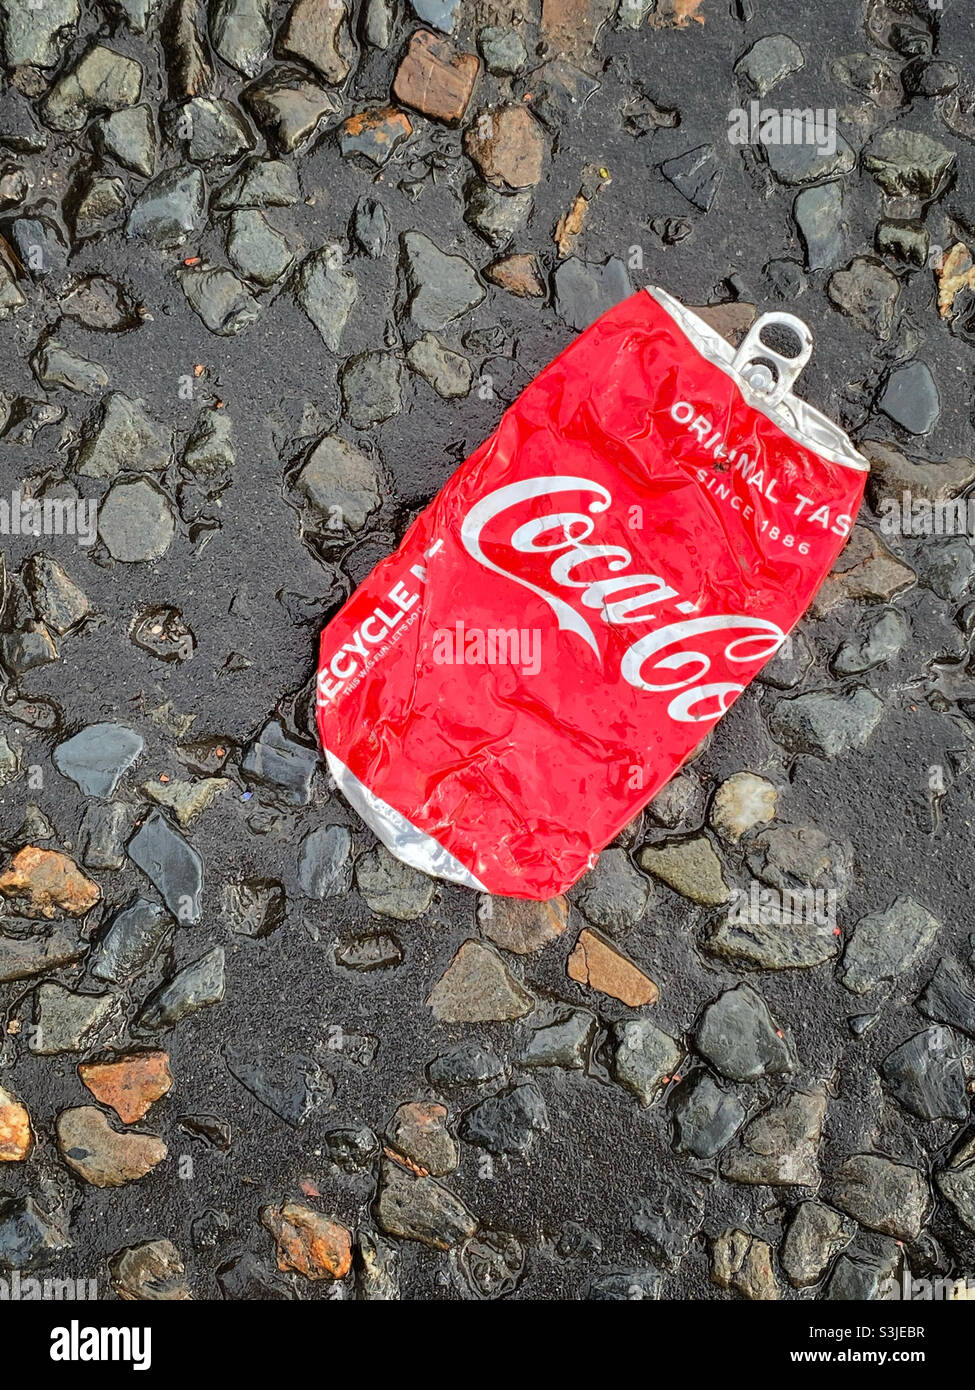 Una lattina schiacciata di gusto originale Coca-Cola è stata gettata sul lato di una strada. Questa bevanda è molto alta in zucchero e calorie. È spazzatura?! Foto ©️ COLIN HOSKINS. Foto Stock